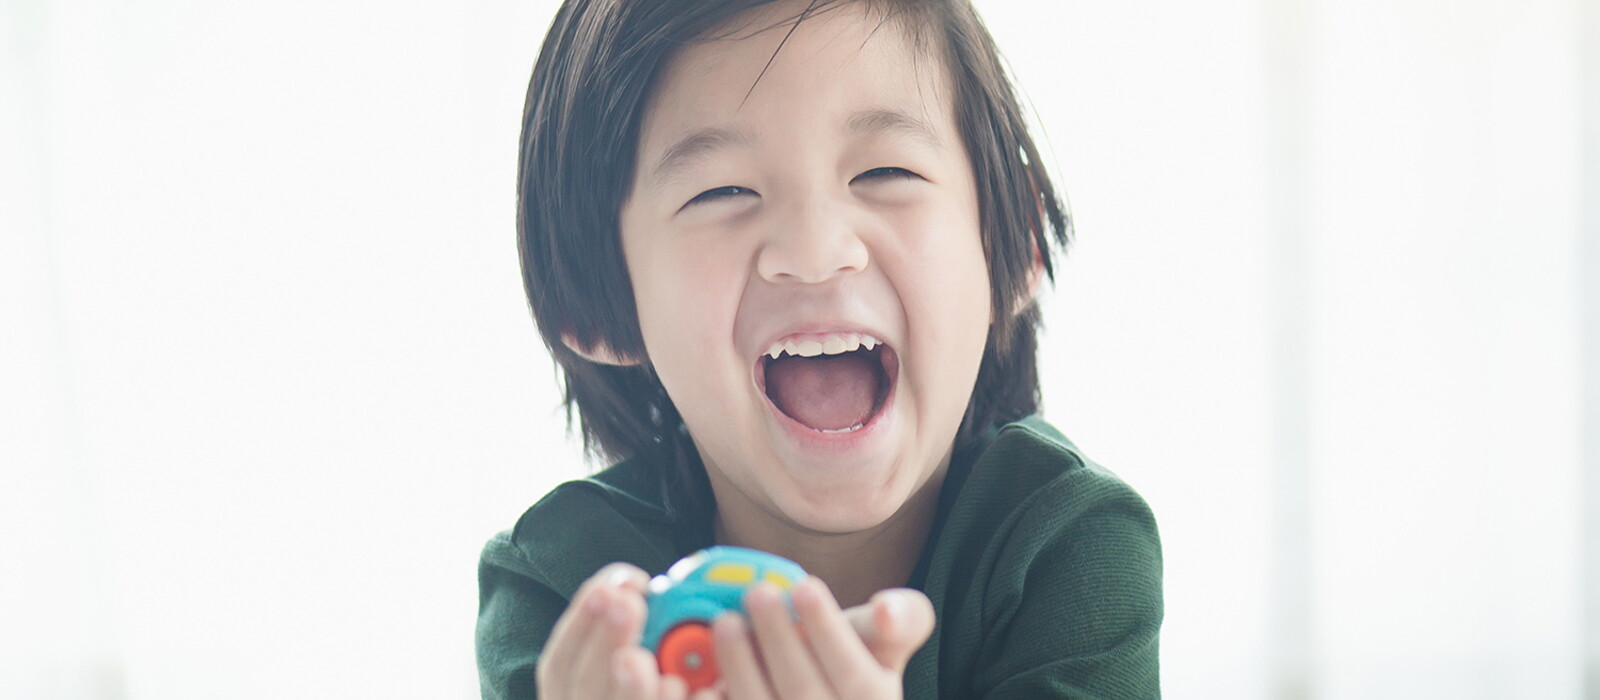 5 กิจกรรมฝึกสมองเด็ก เสริมพัฒนาการให้ลูกสมองไว